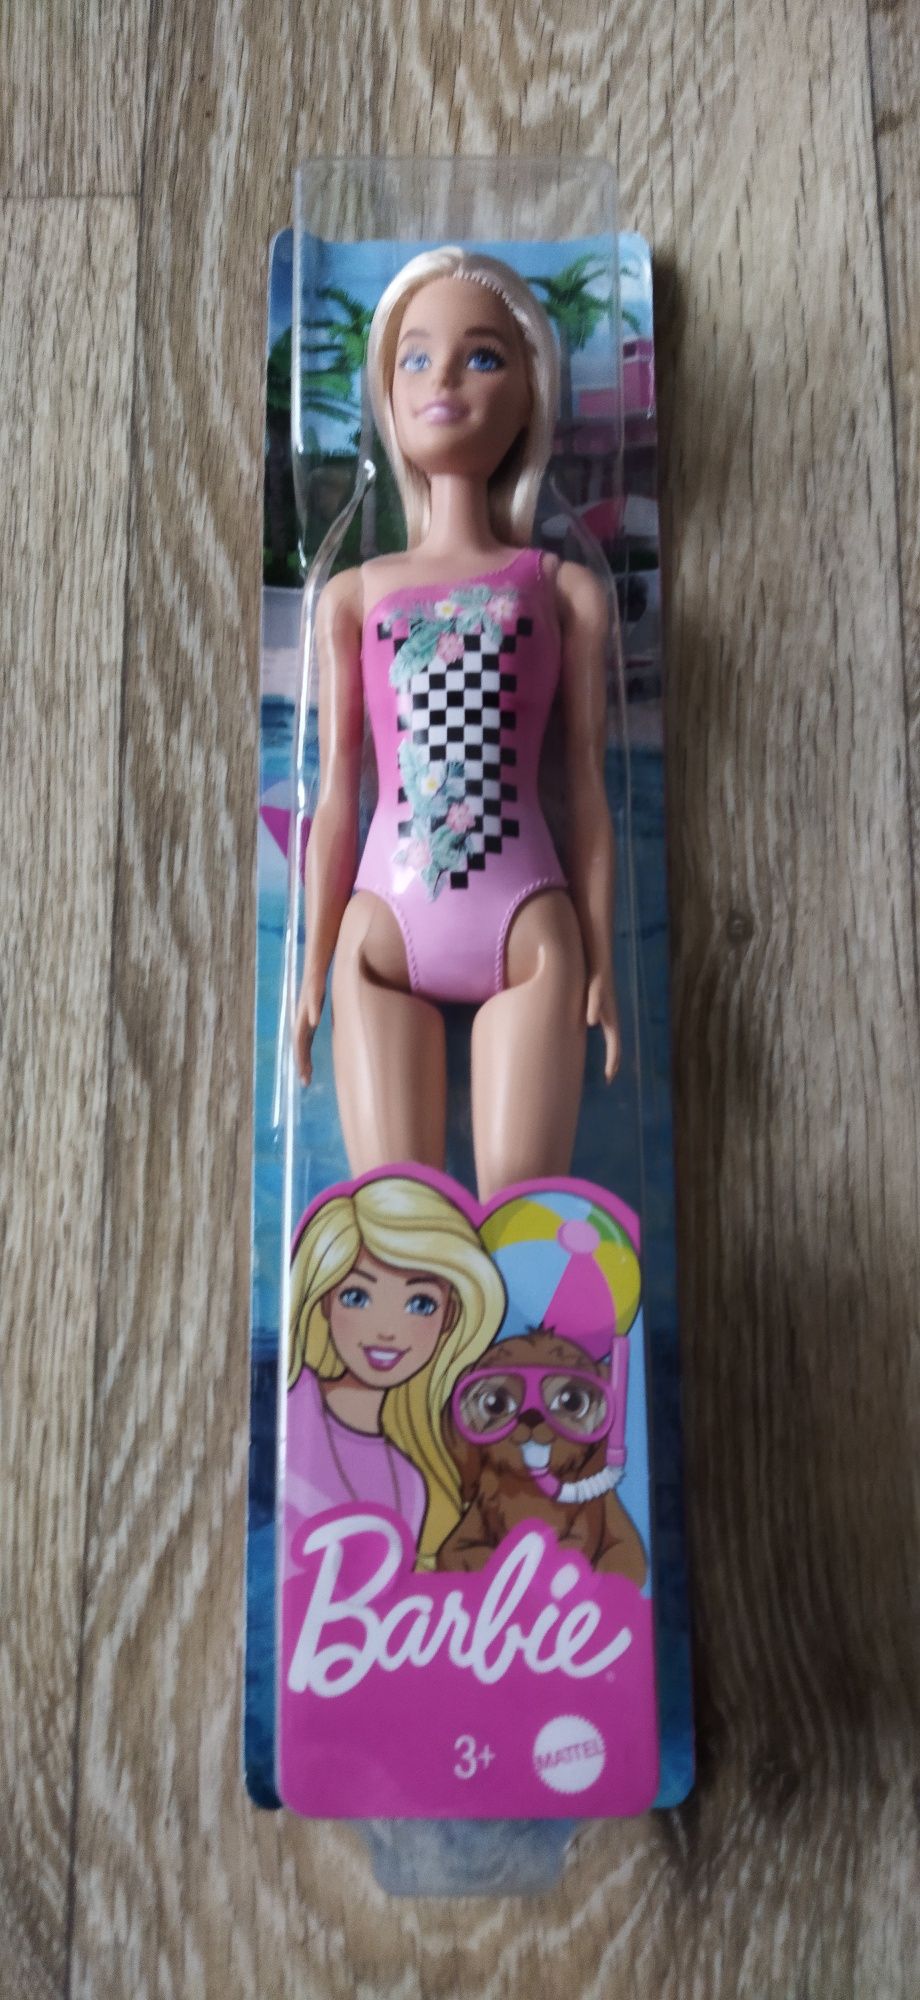 Lalka Barbie Plażowa Mattel!! Nowa!!